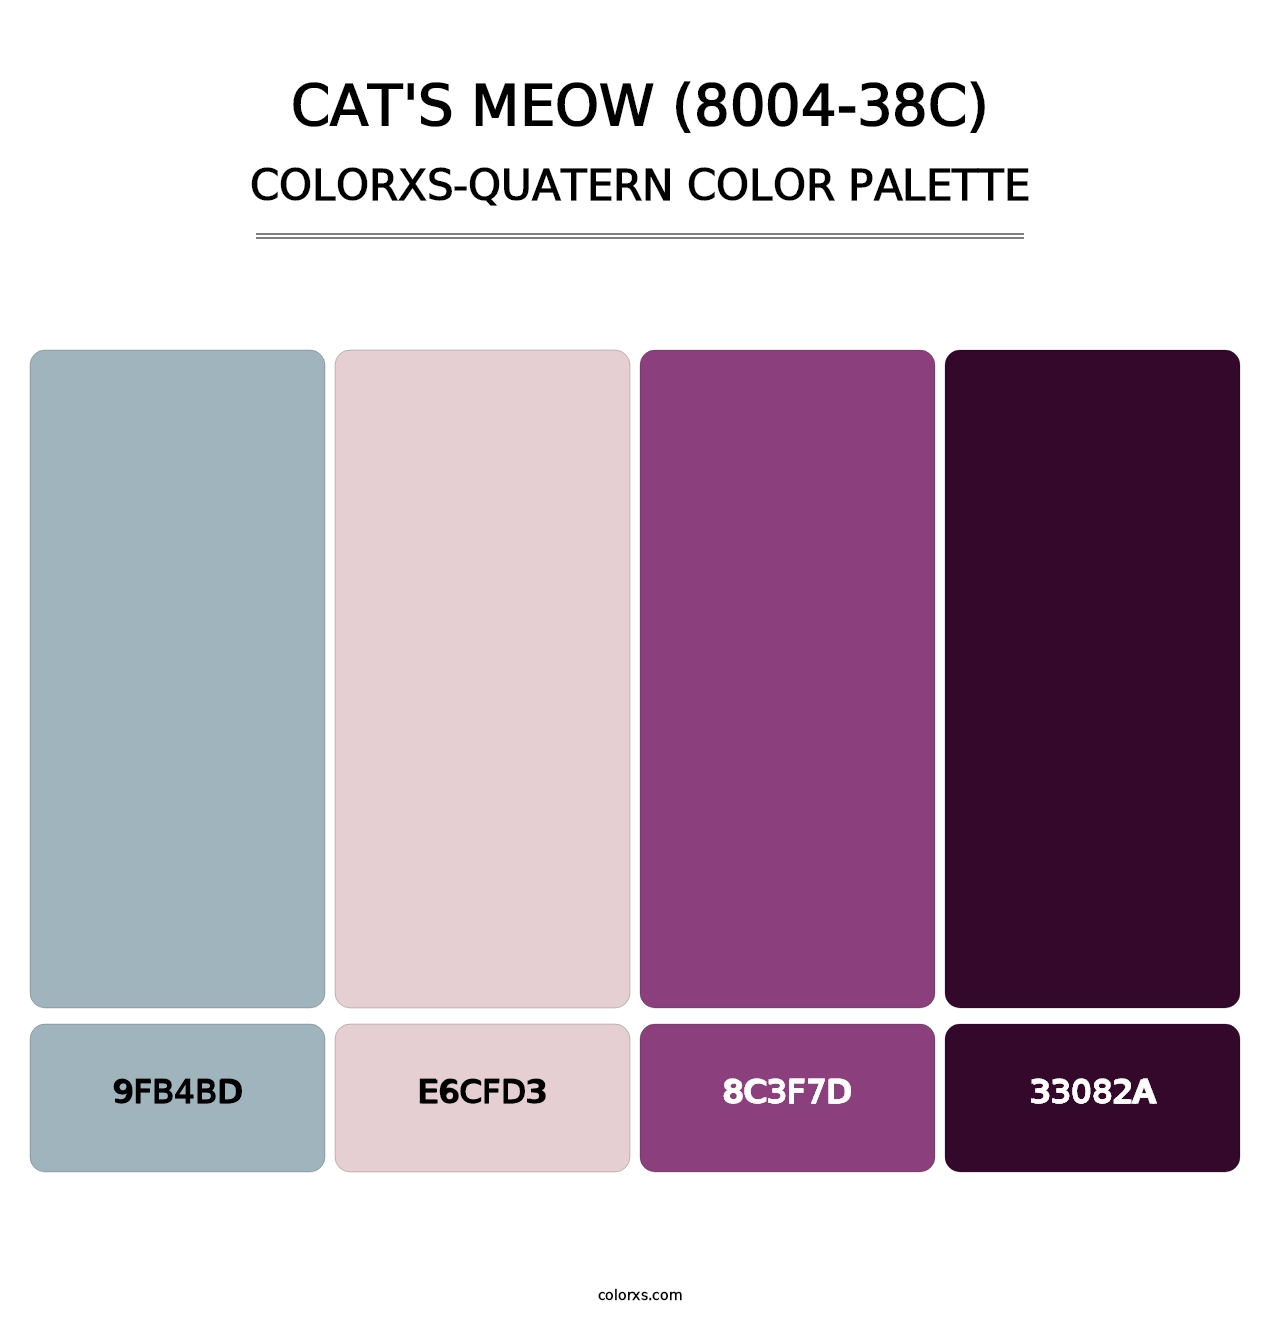 Cat's Meow (8004-38C) - Colorxs Quatern Palette